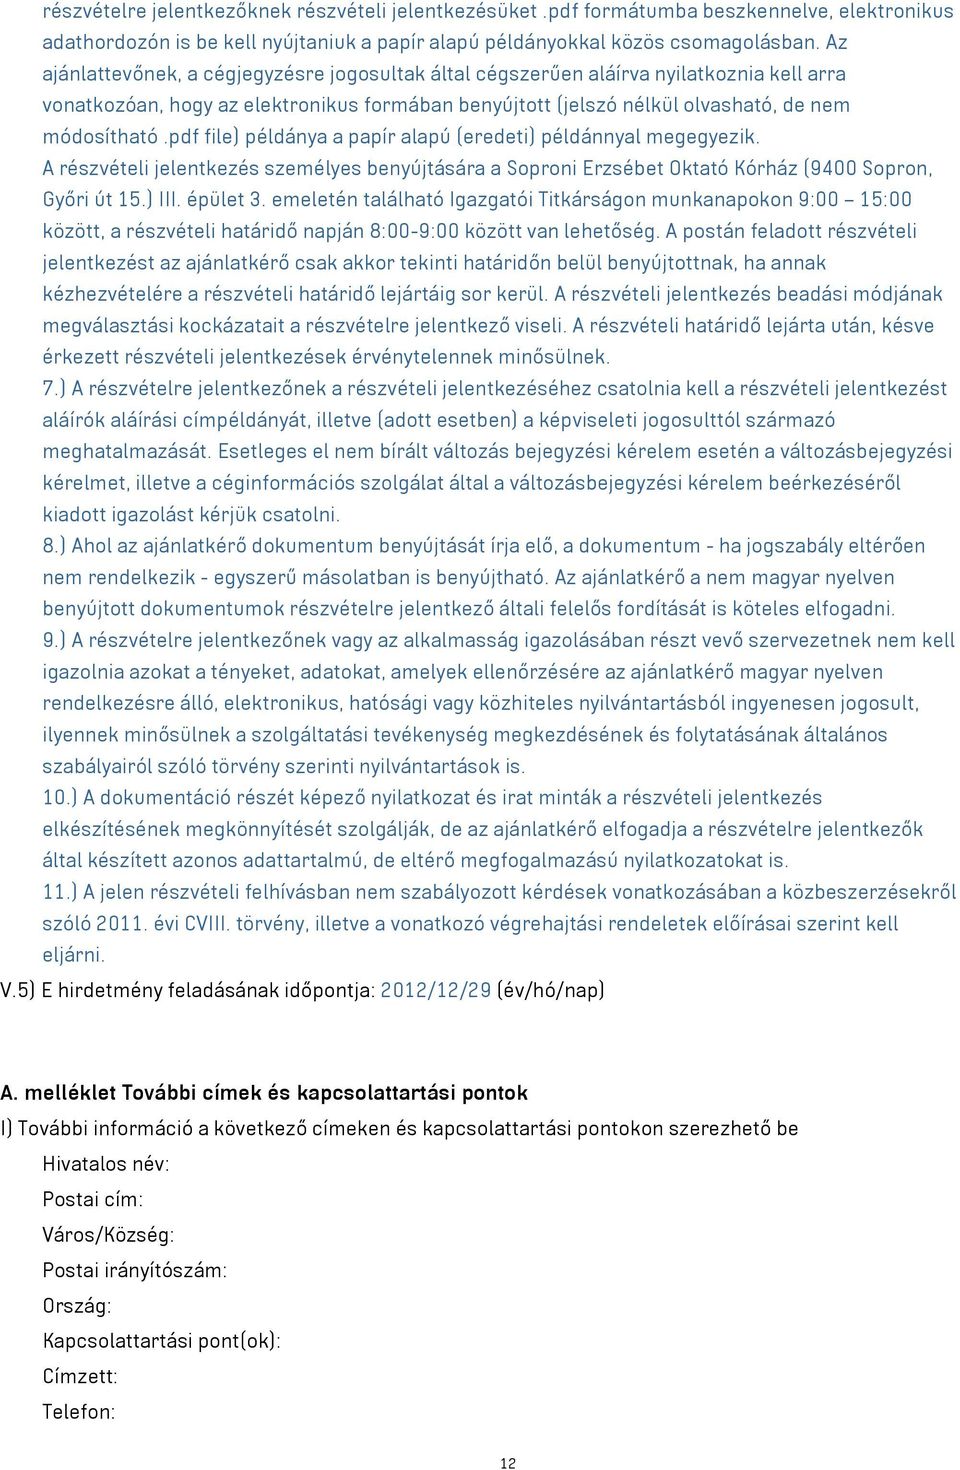 pdf file) példánya a papír alapú (eredeti) példánnyal megegyezik. A részvételi jelentkezés személyes benyújtására a Soproni Erzsébet Oktató Kórház (9400 Sopron, Győri út 15.) III. épület 3.